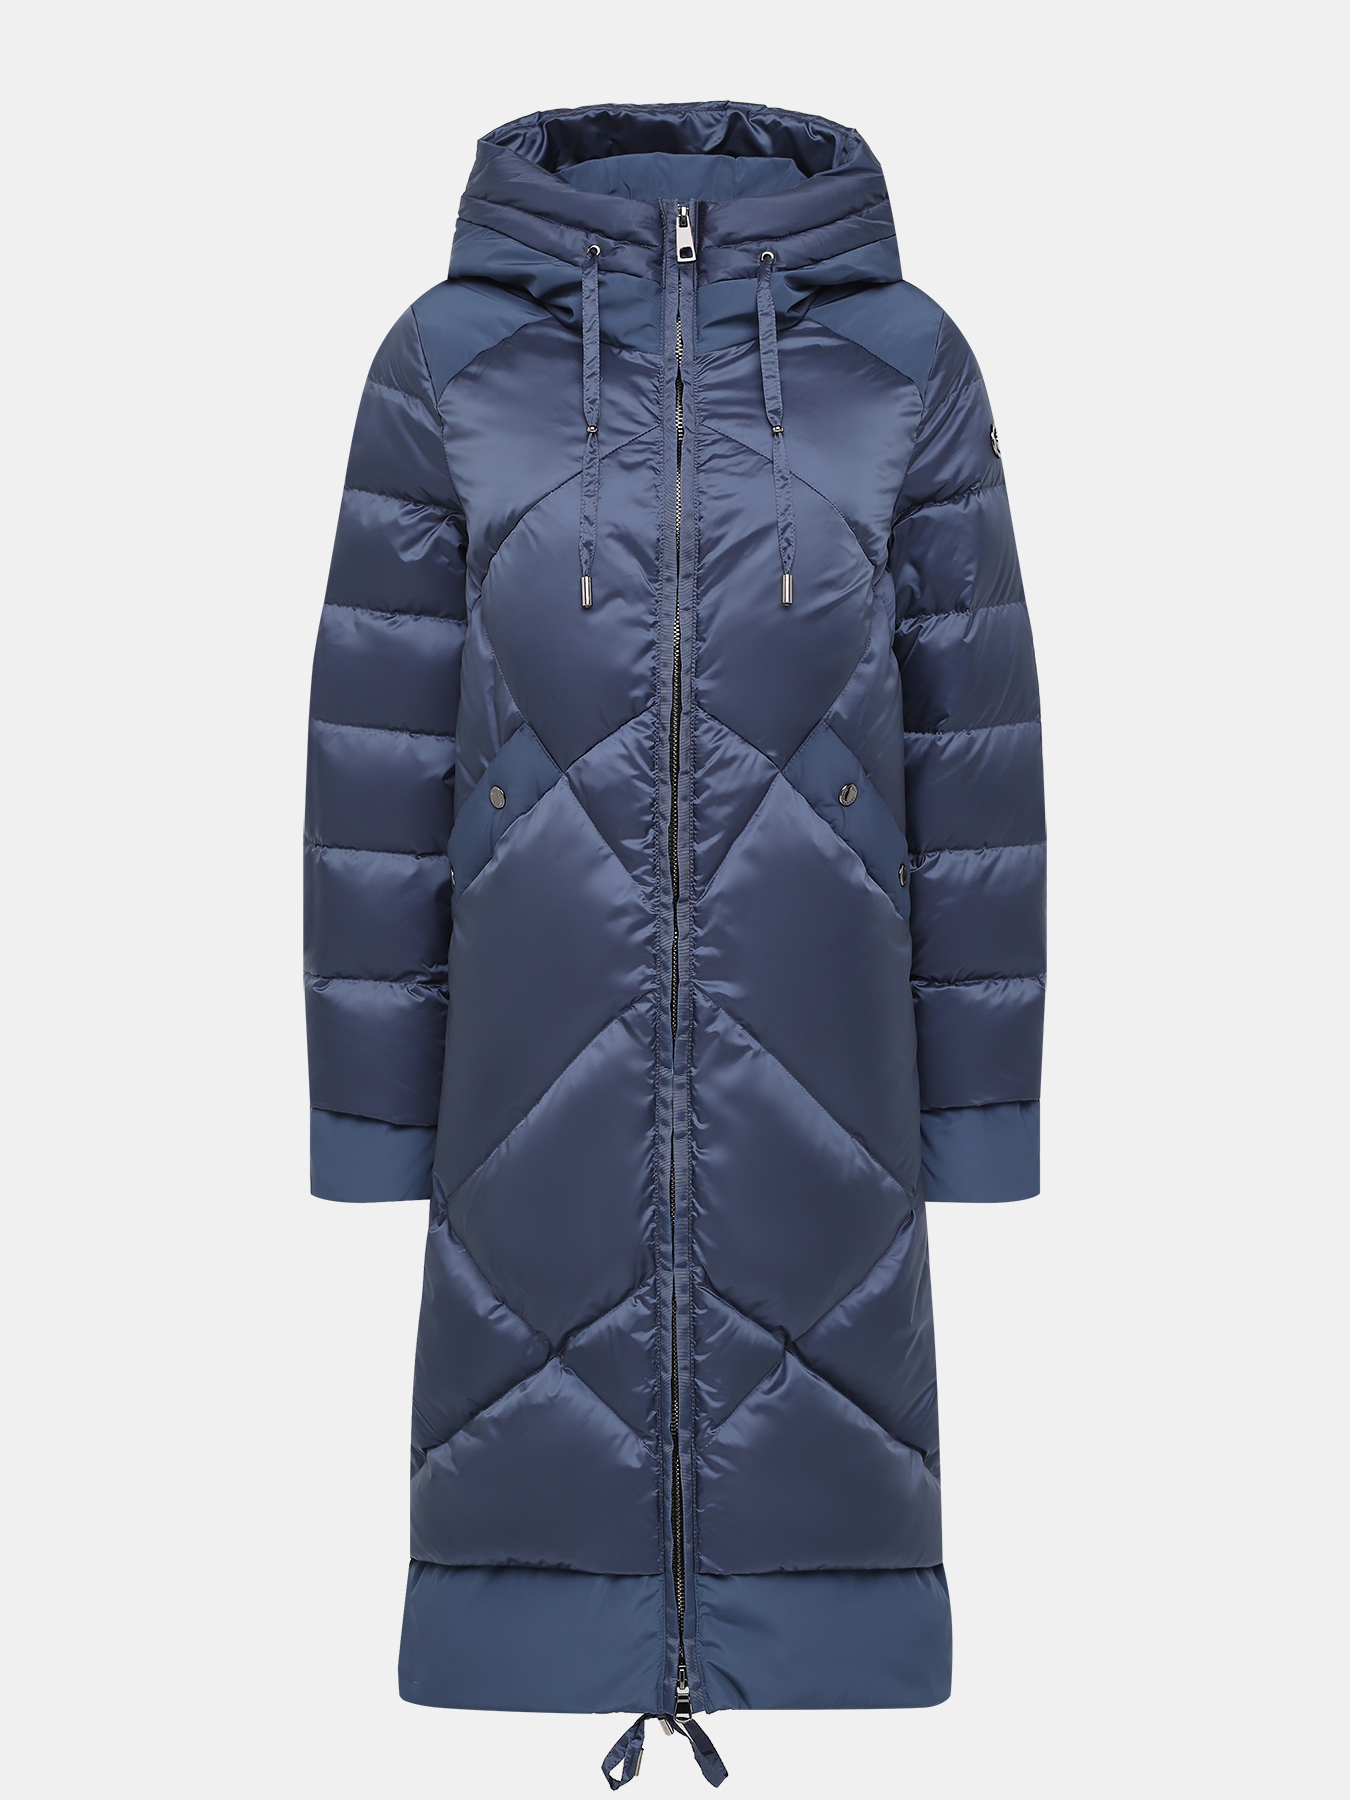 Пальто зимнее AVI 433559-020, цвет синий, размер 44